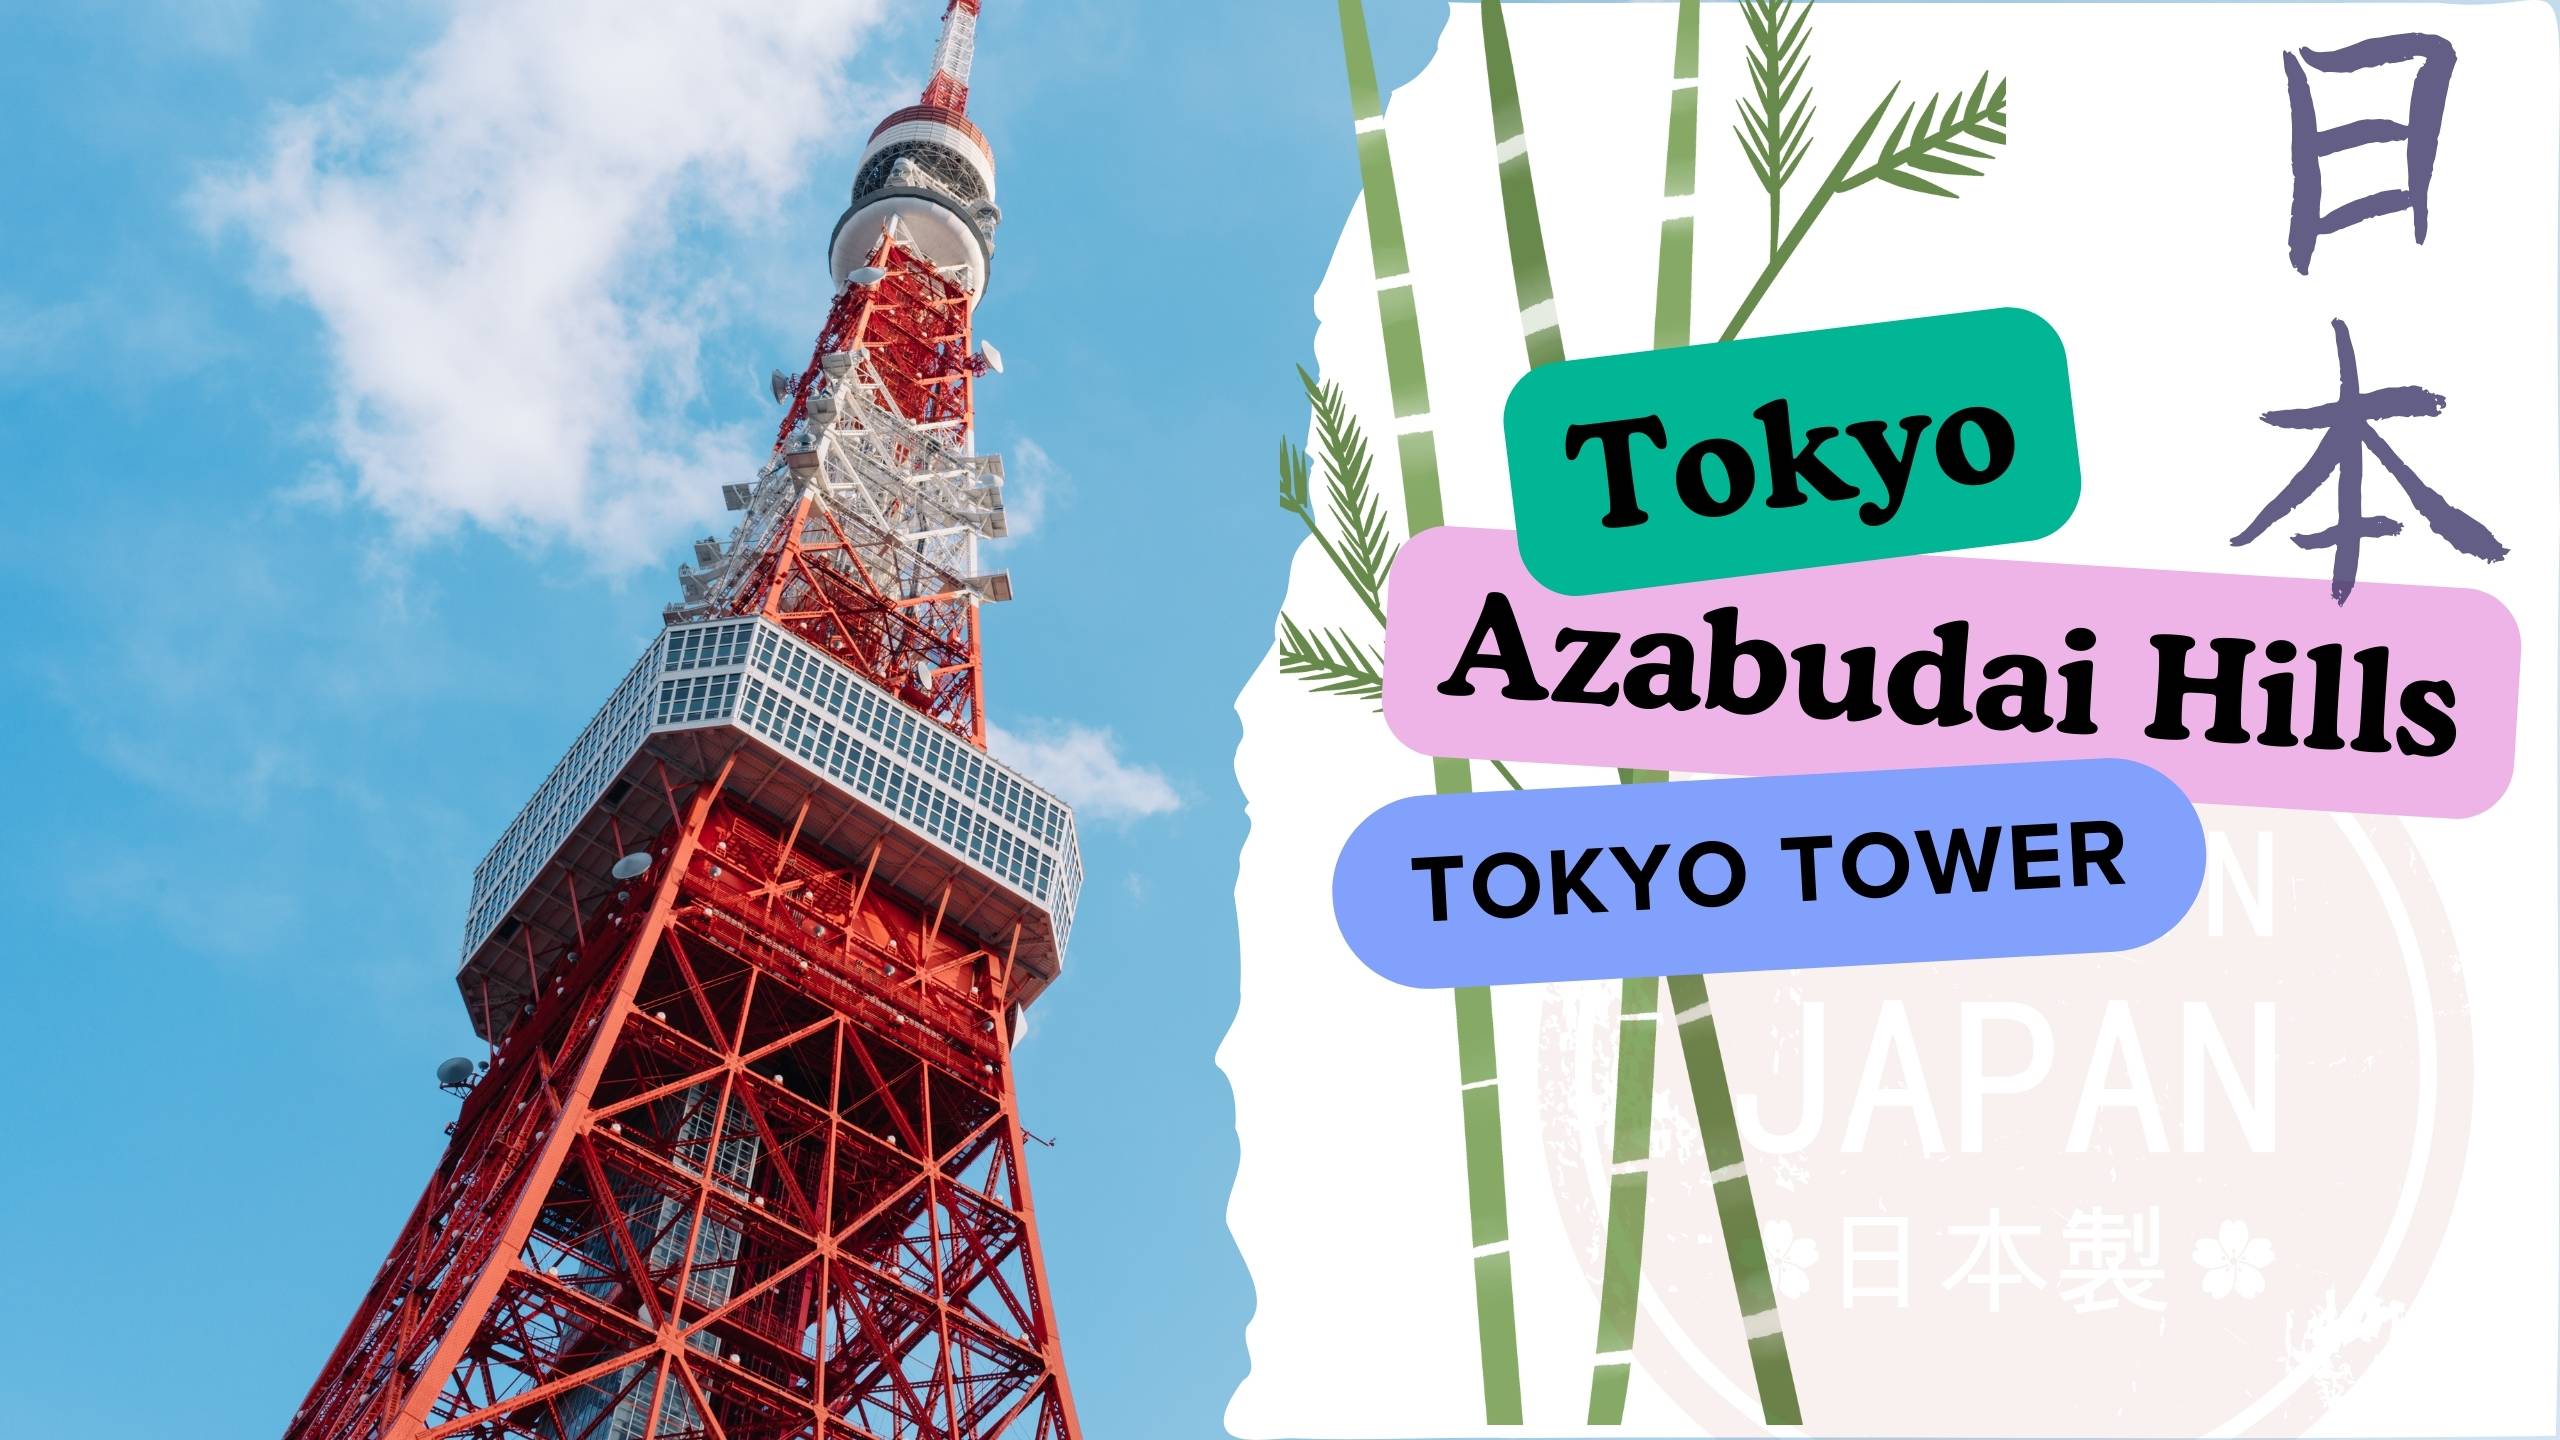 Прогулка по Токио | Самое высокое здание в Токио | Azabudai Hills | Tokyo Tower